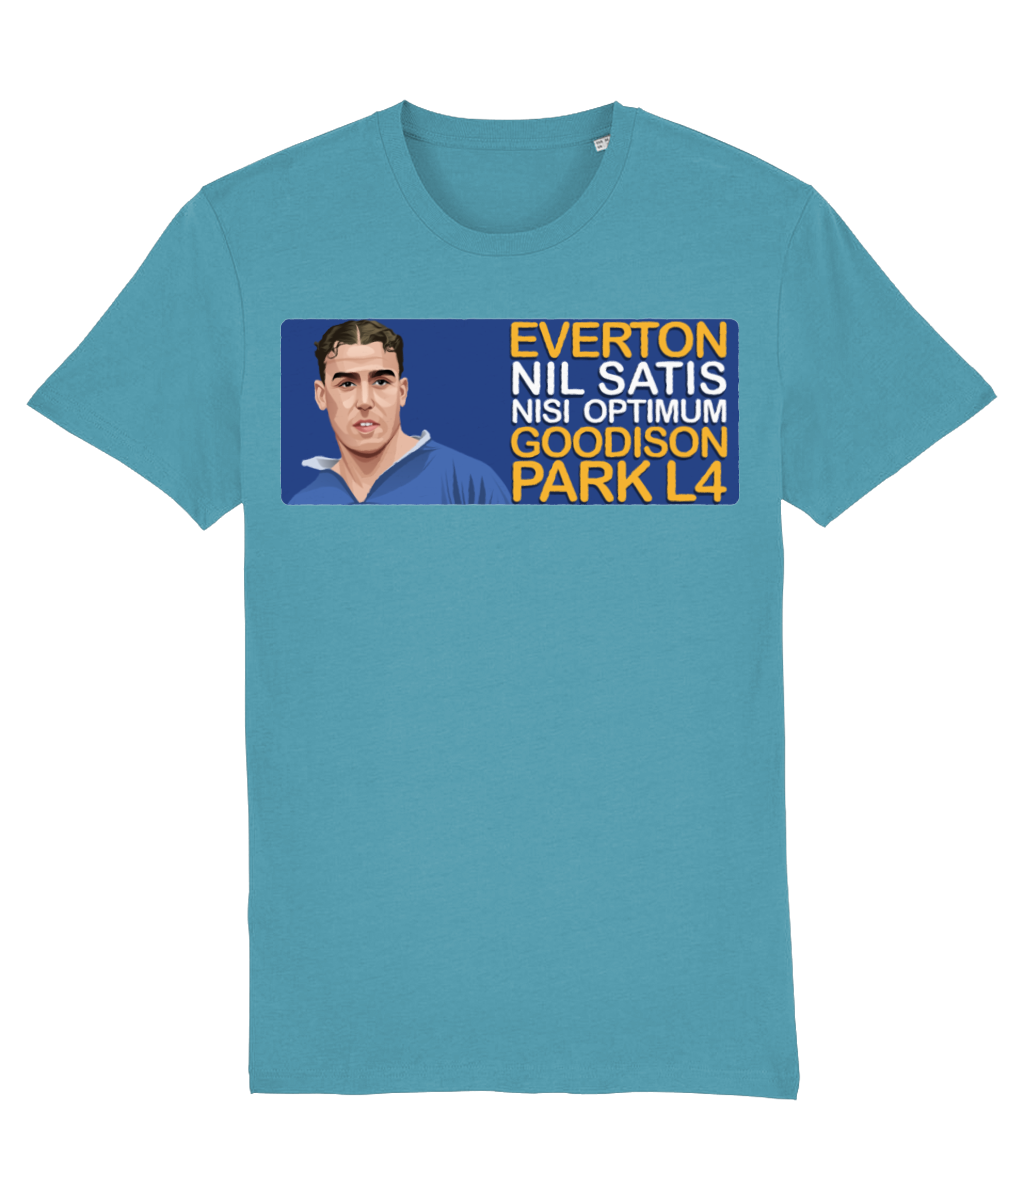 Everton Dixie Dean Goodison Park L4 Unisex T-Shirt